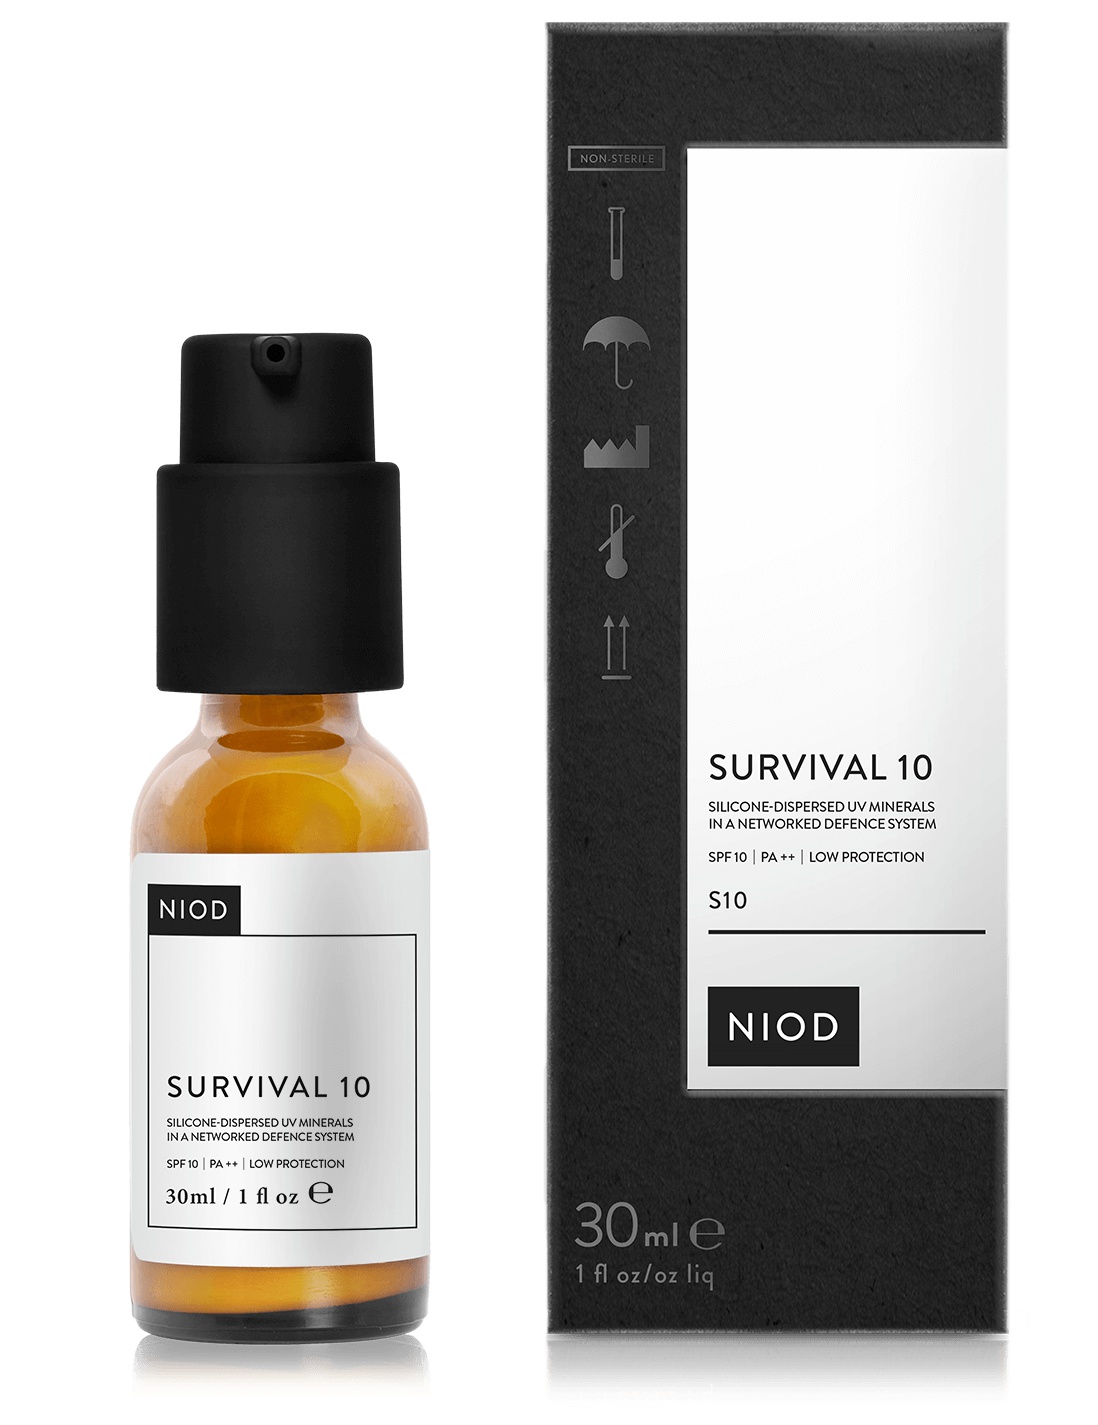 NIOD Survival 10